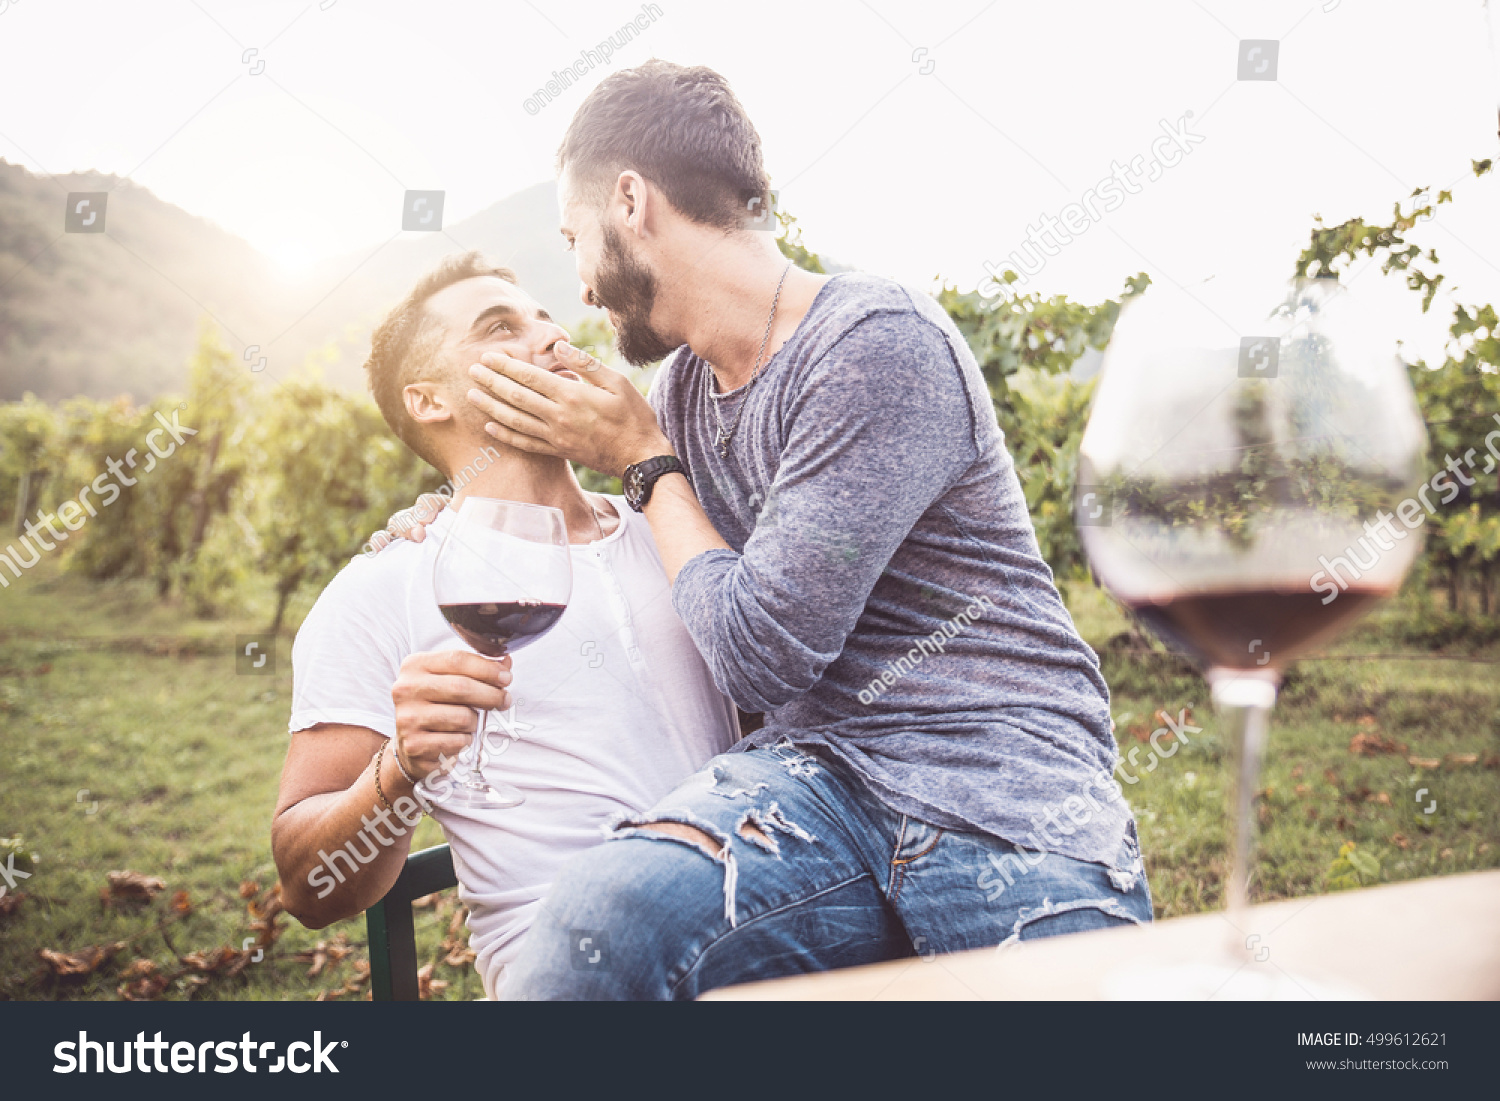 ロマンチックなデートでゲイ同士のカップル 楽しいワインと飲むワイン 同性愛者とのキス の写真素材 今すぐ編集